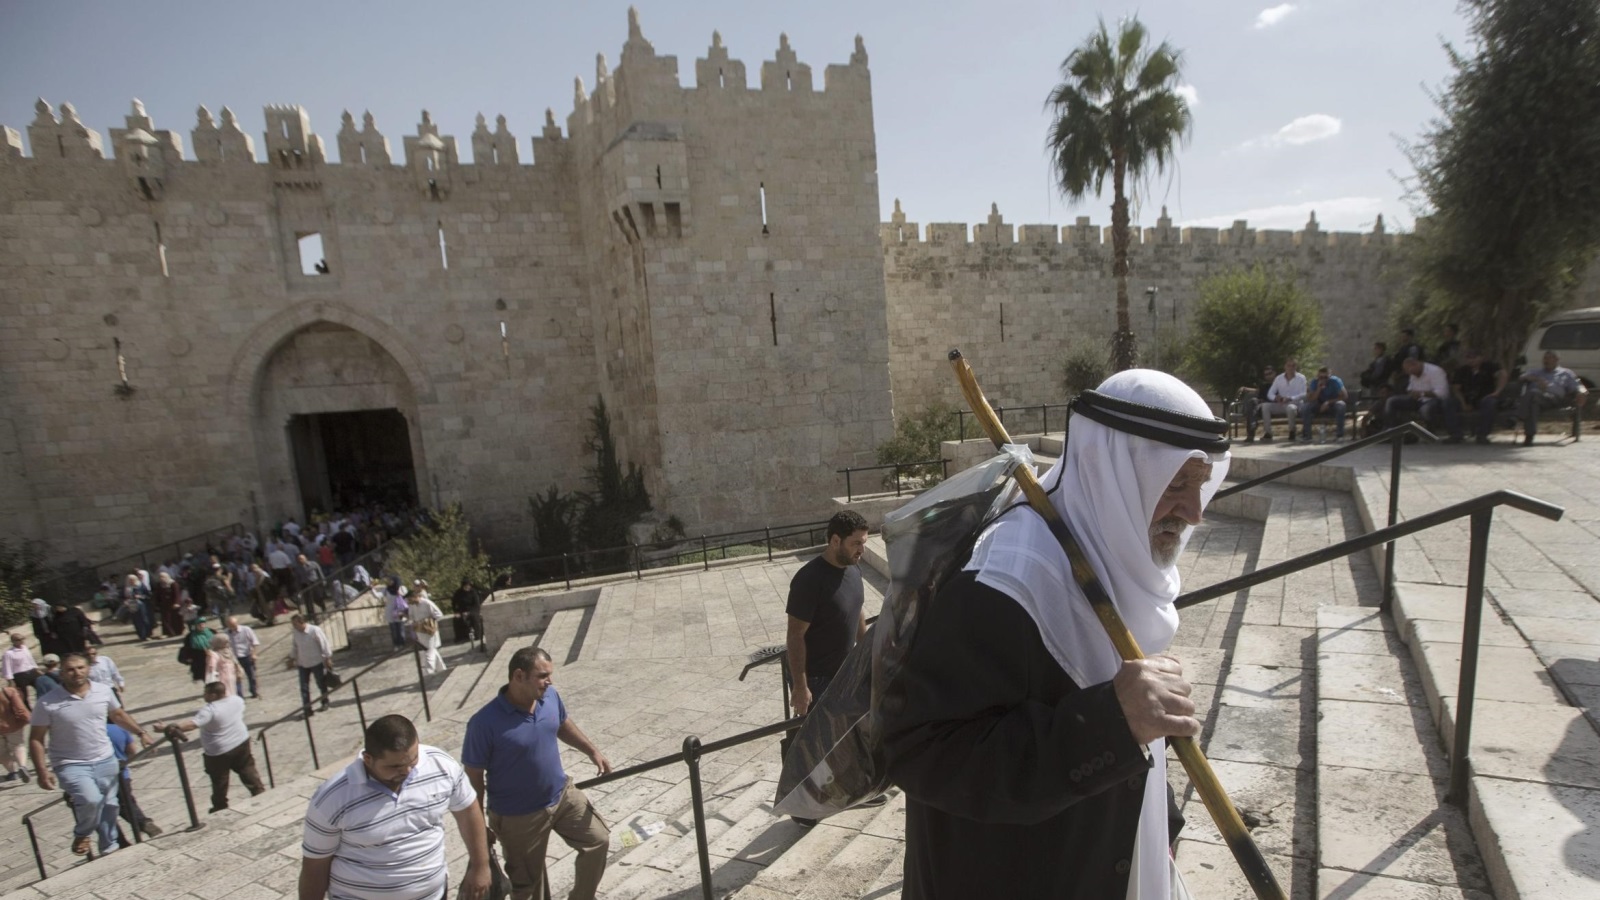 ‪شيخ فلسطيني يقصد المسجد الأقصى لصلاة الجمعة‬ شيخ فلسطيني يقصد المسجد الأقصى لصلاة الجمعة (الأوروبية)